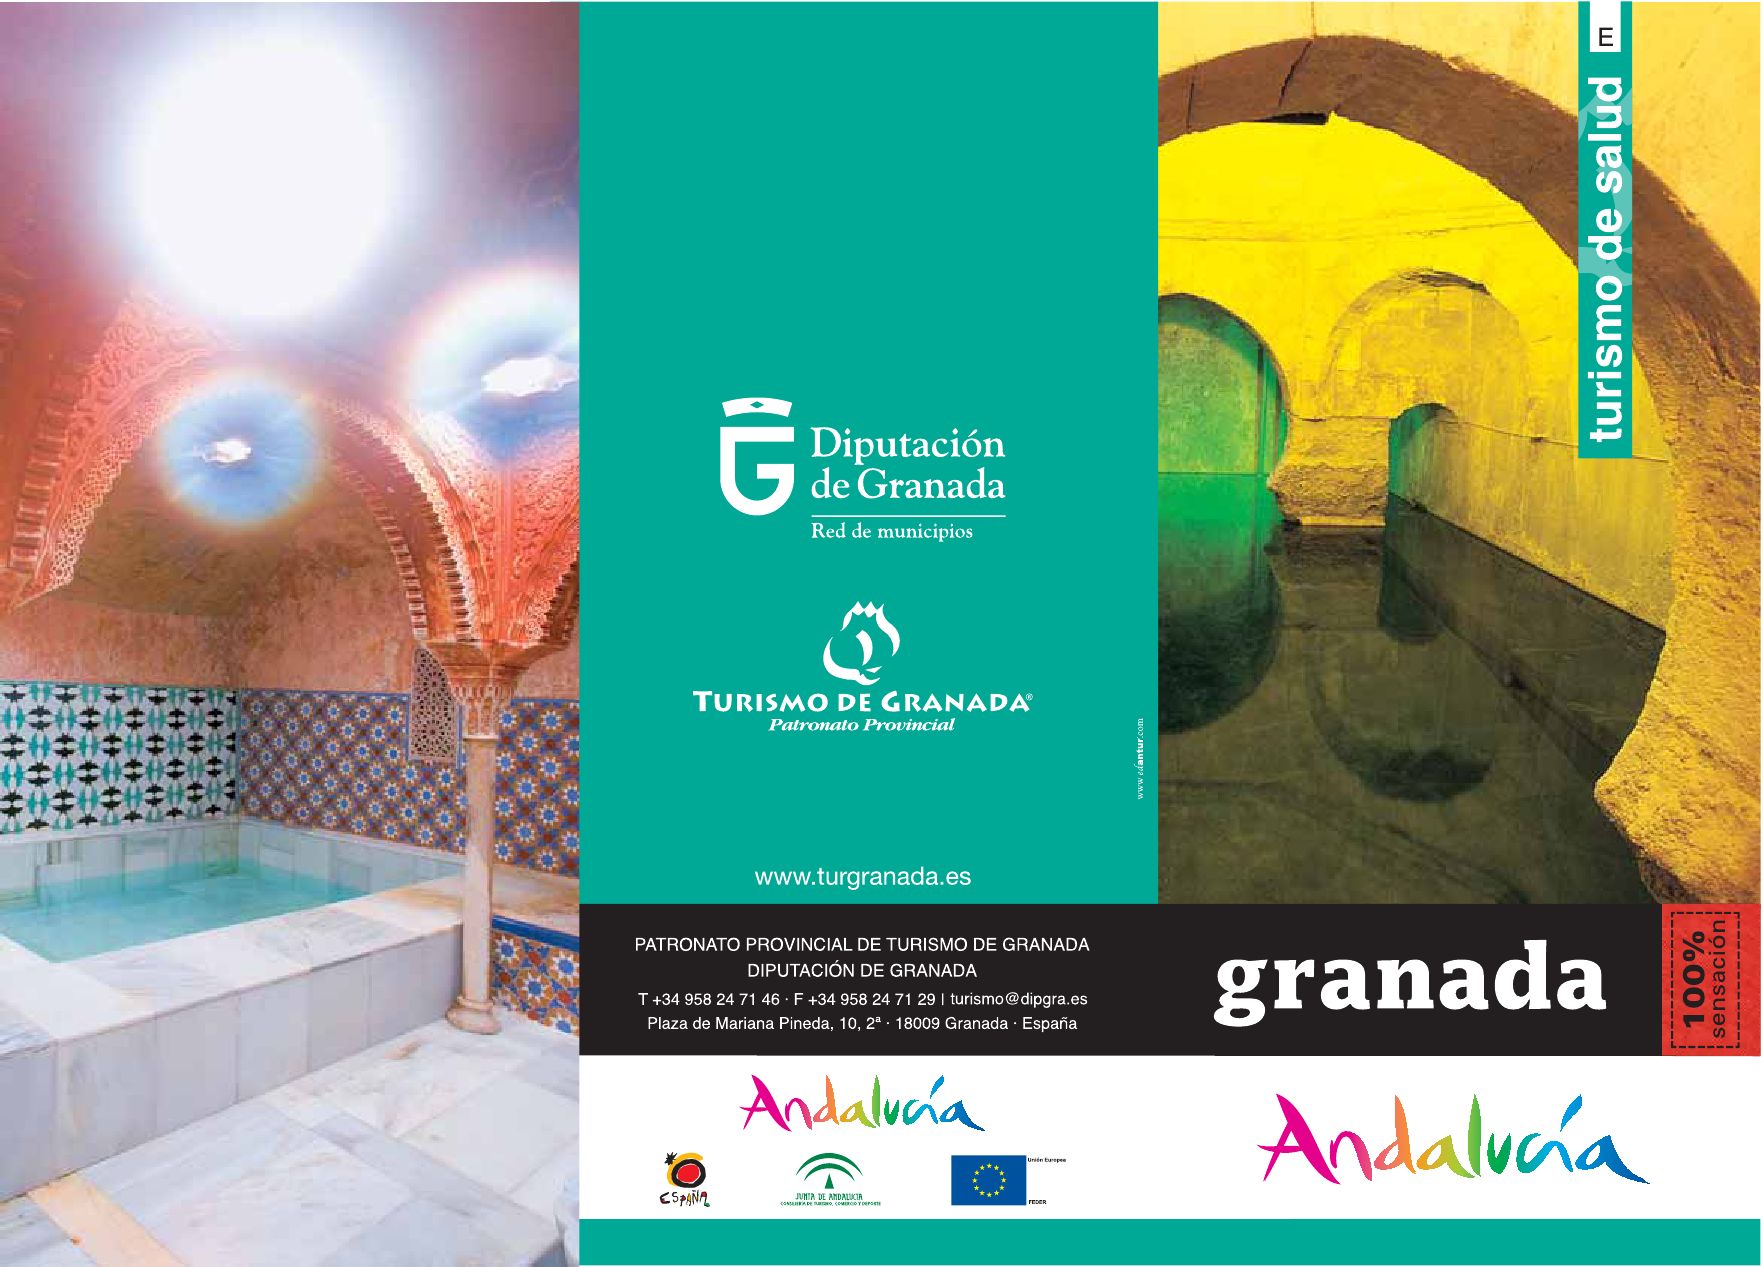 Sumérgete en la tranquilidad de la Hospedería del Zenete en Granada